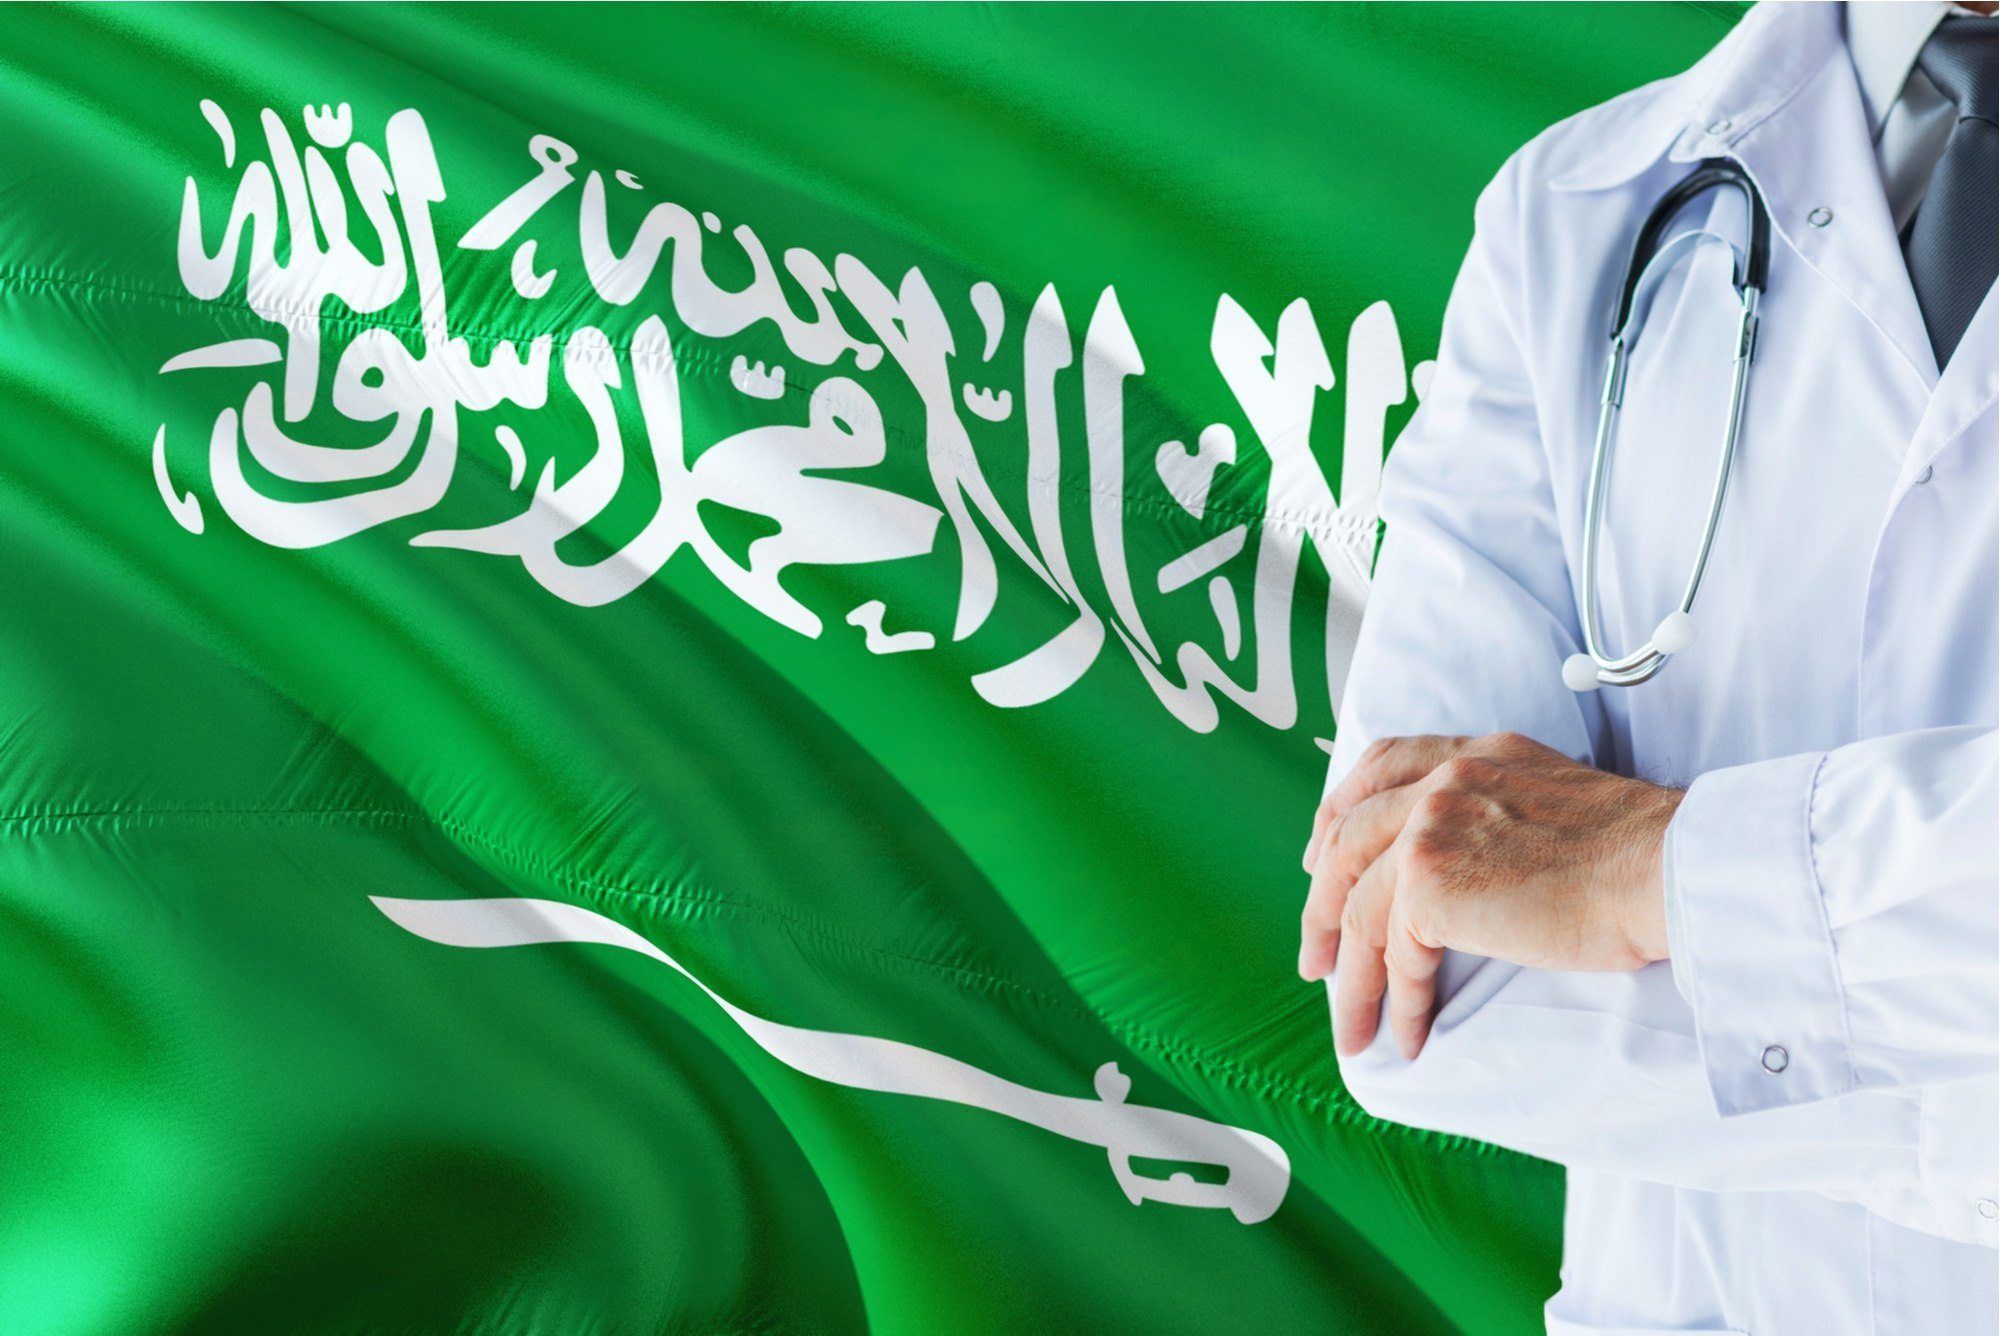 الرعاية الصحية في الرياض